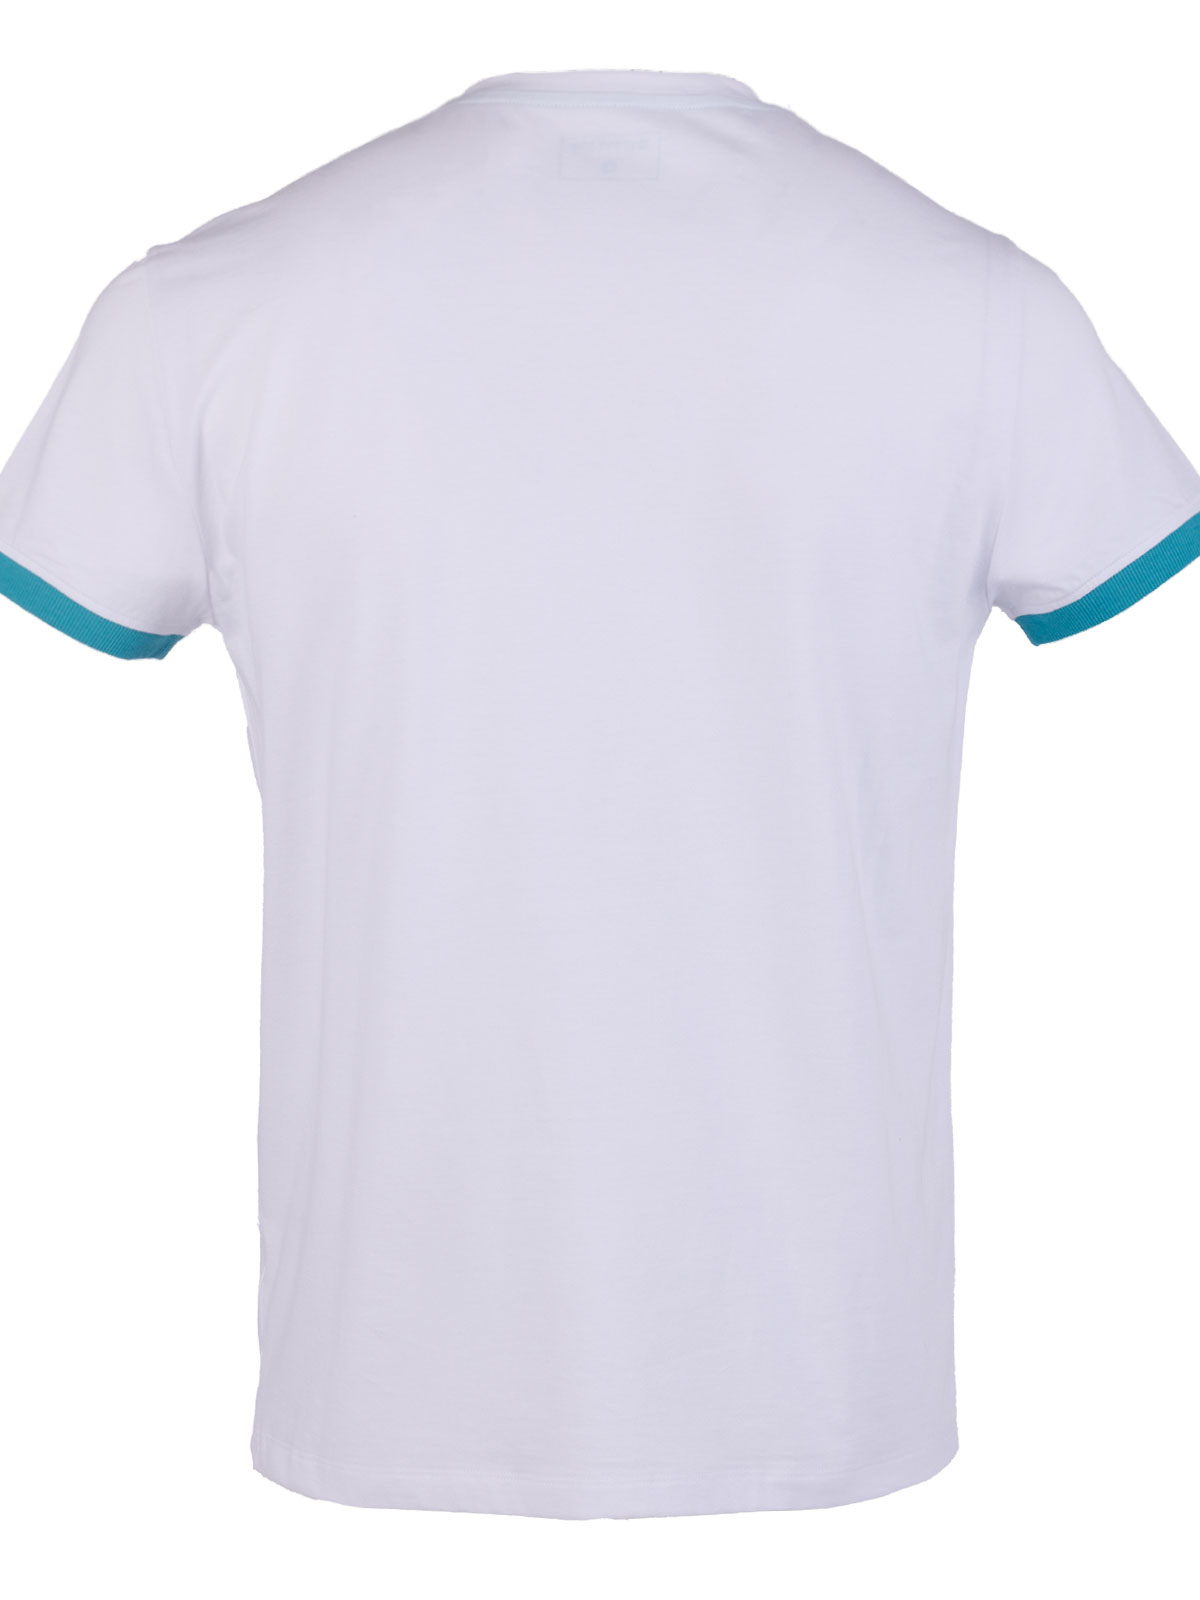 Бяла тениска с печат цветни линии - 96473 49.00 лв img2